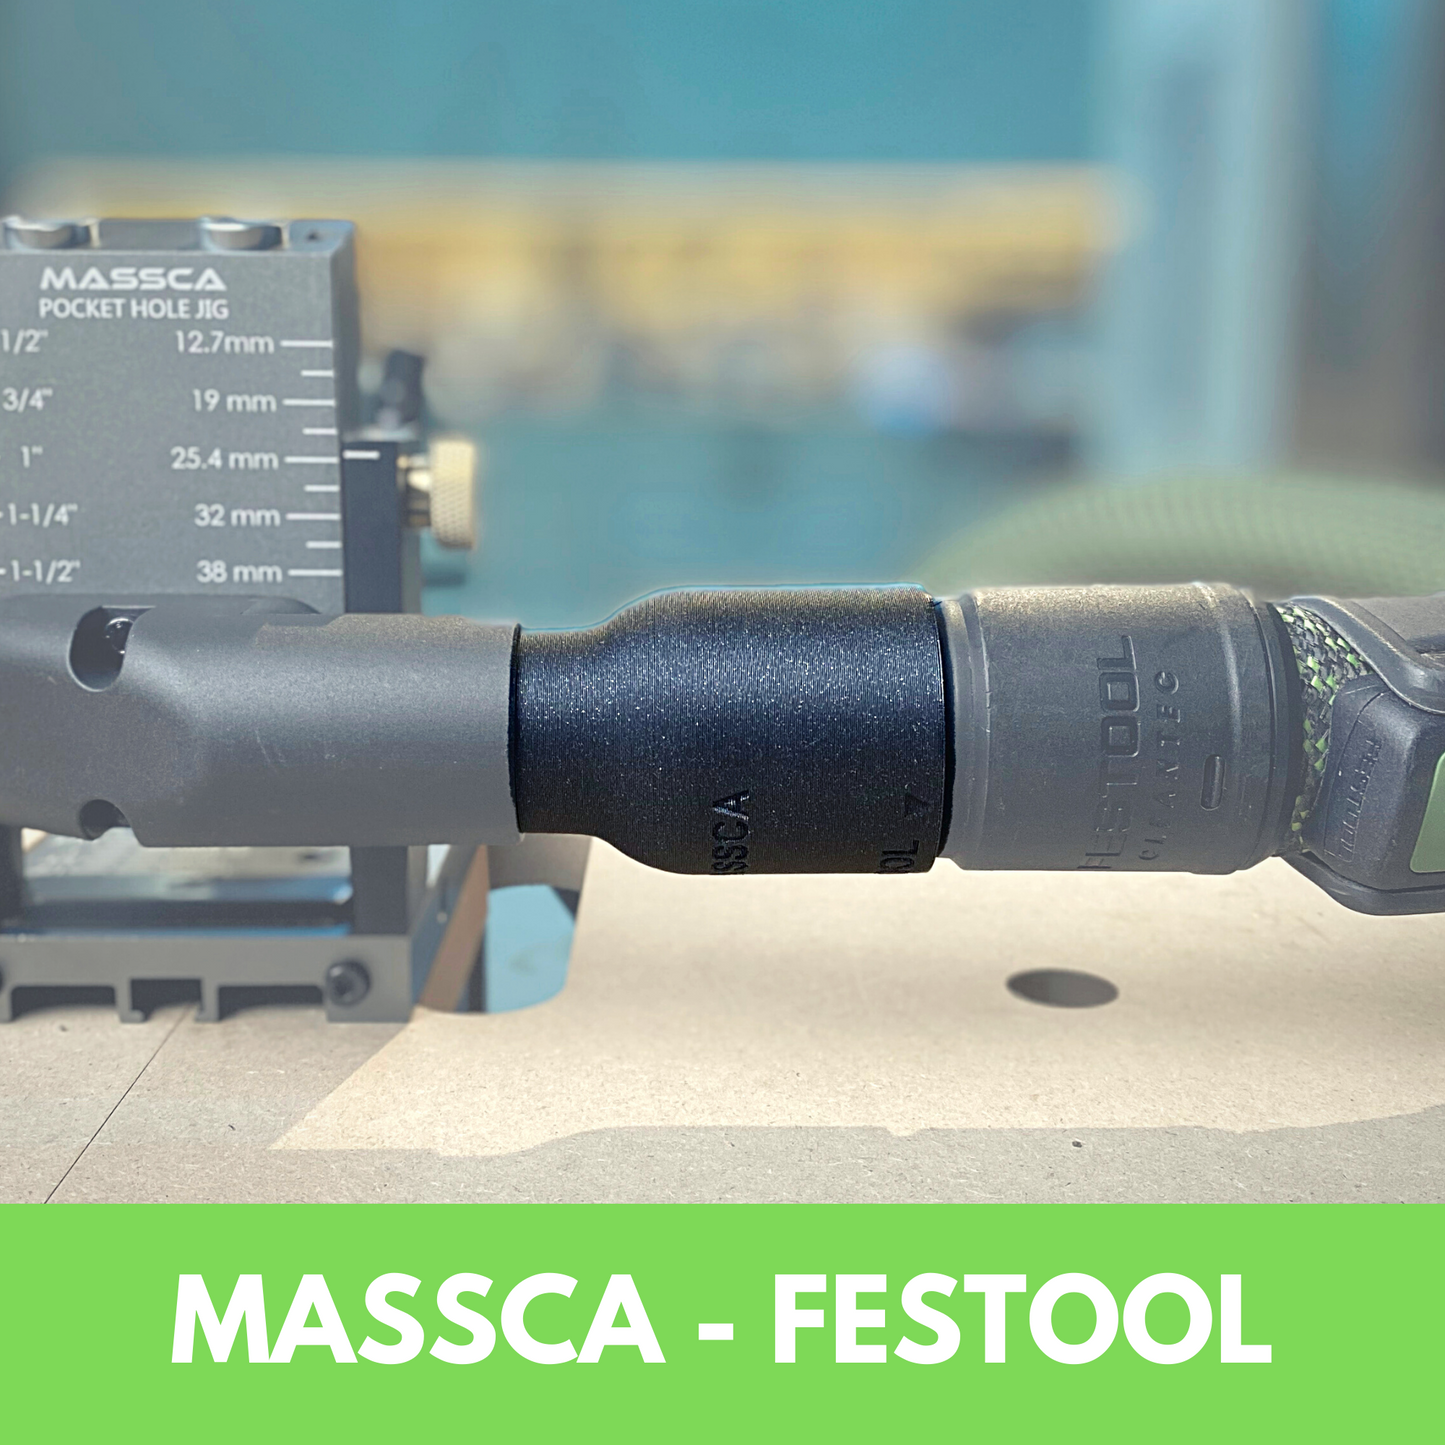 Hose Adaptor for Massca/Festool 27mm Hose Connection